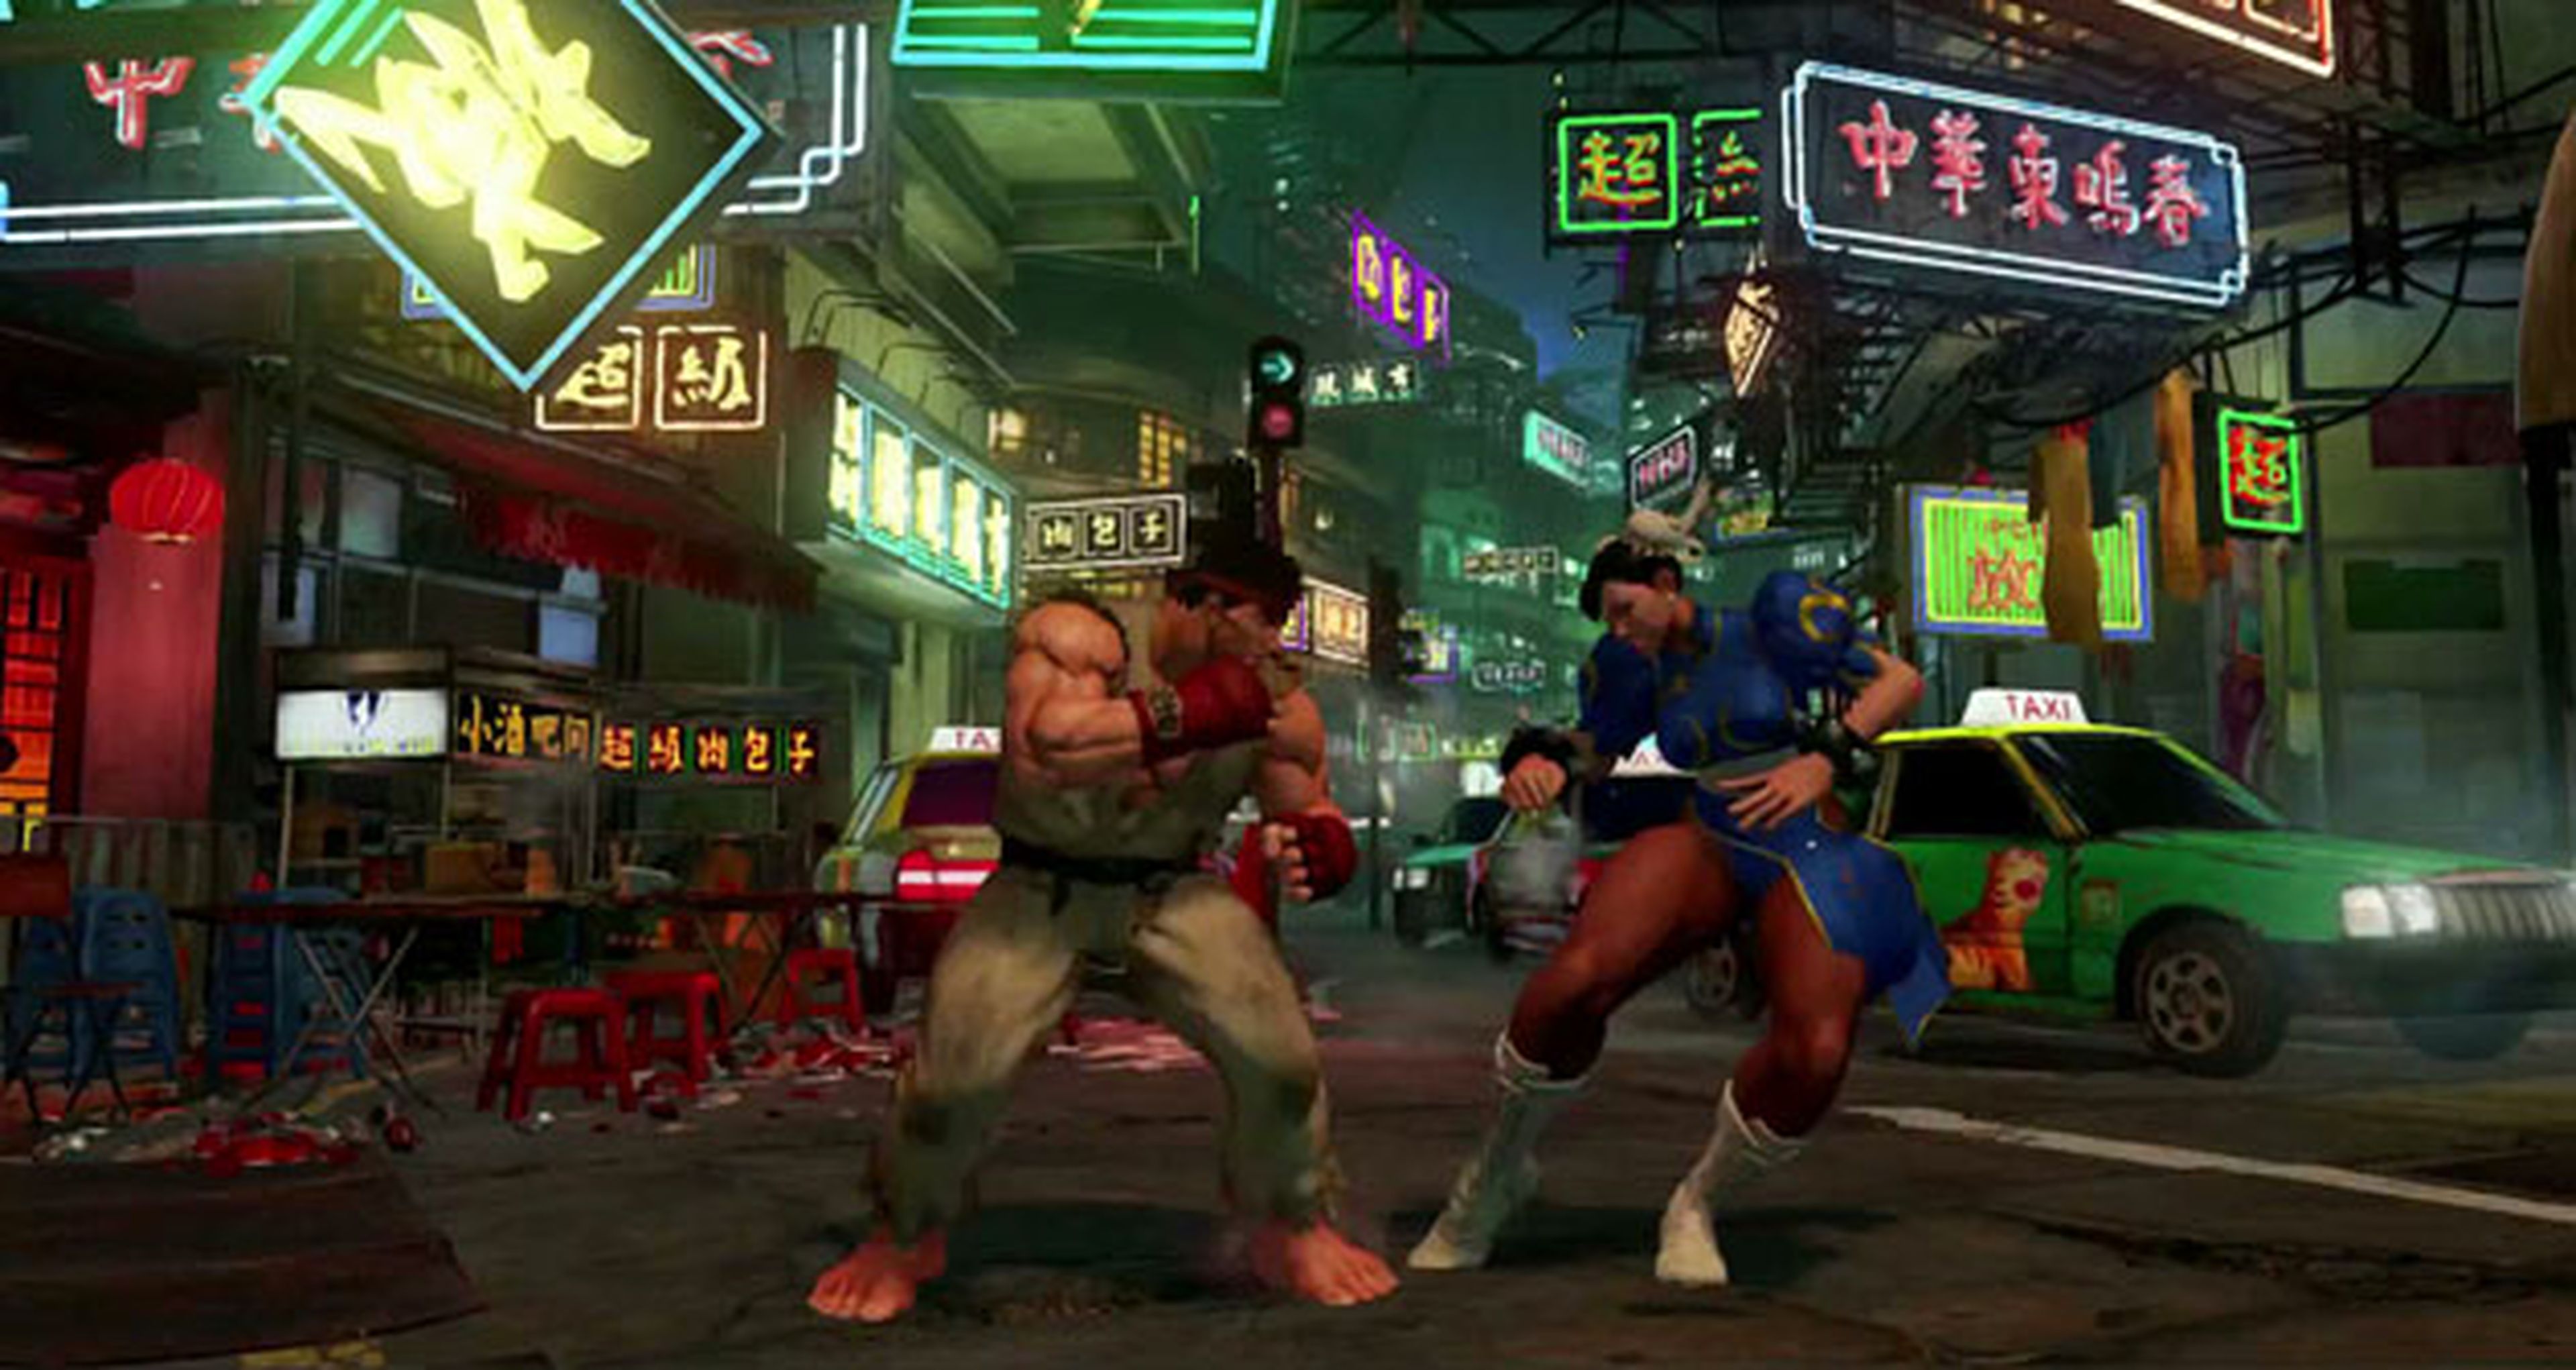 Street Fighter V no llegará jamás a Xbox One, Capcom lo confirma